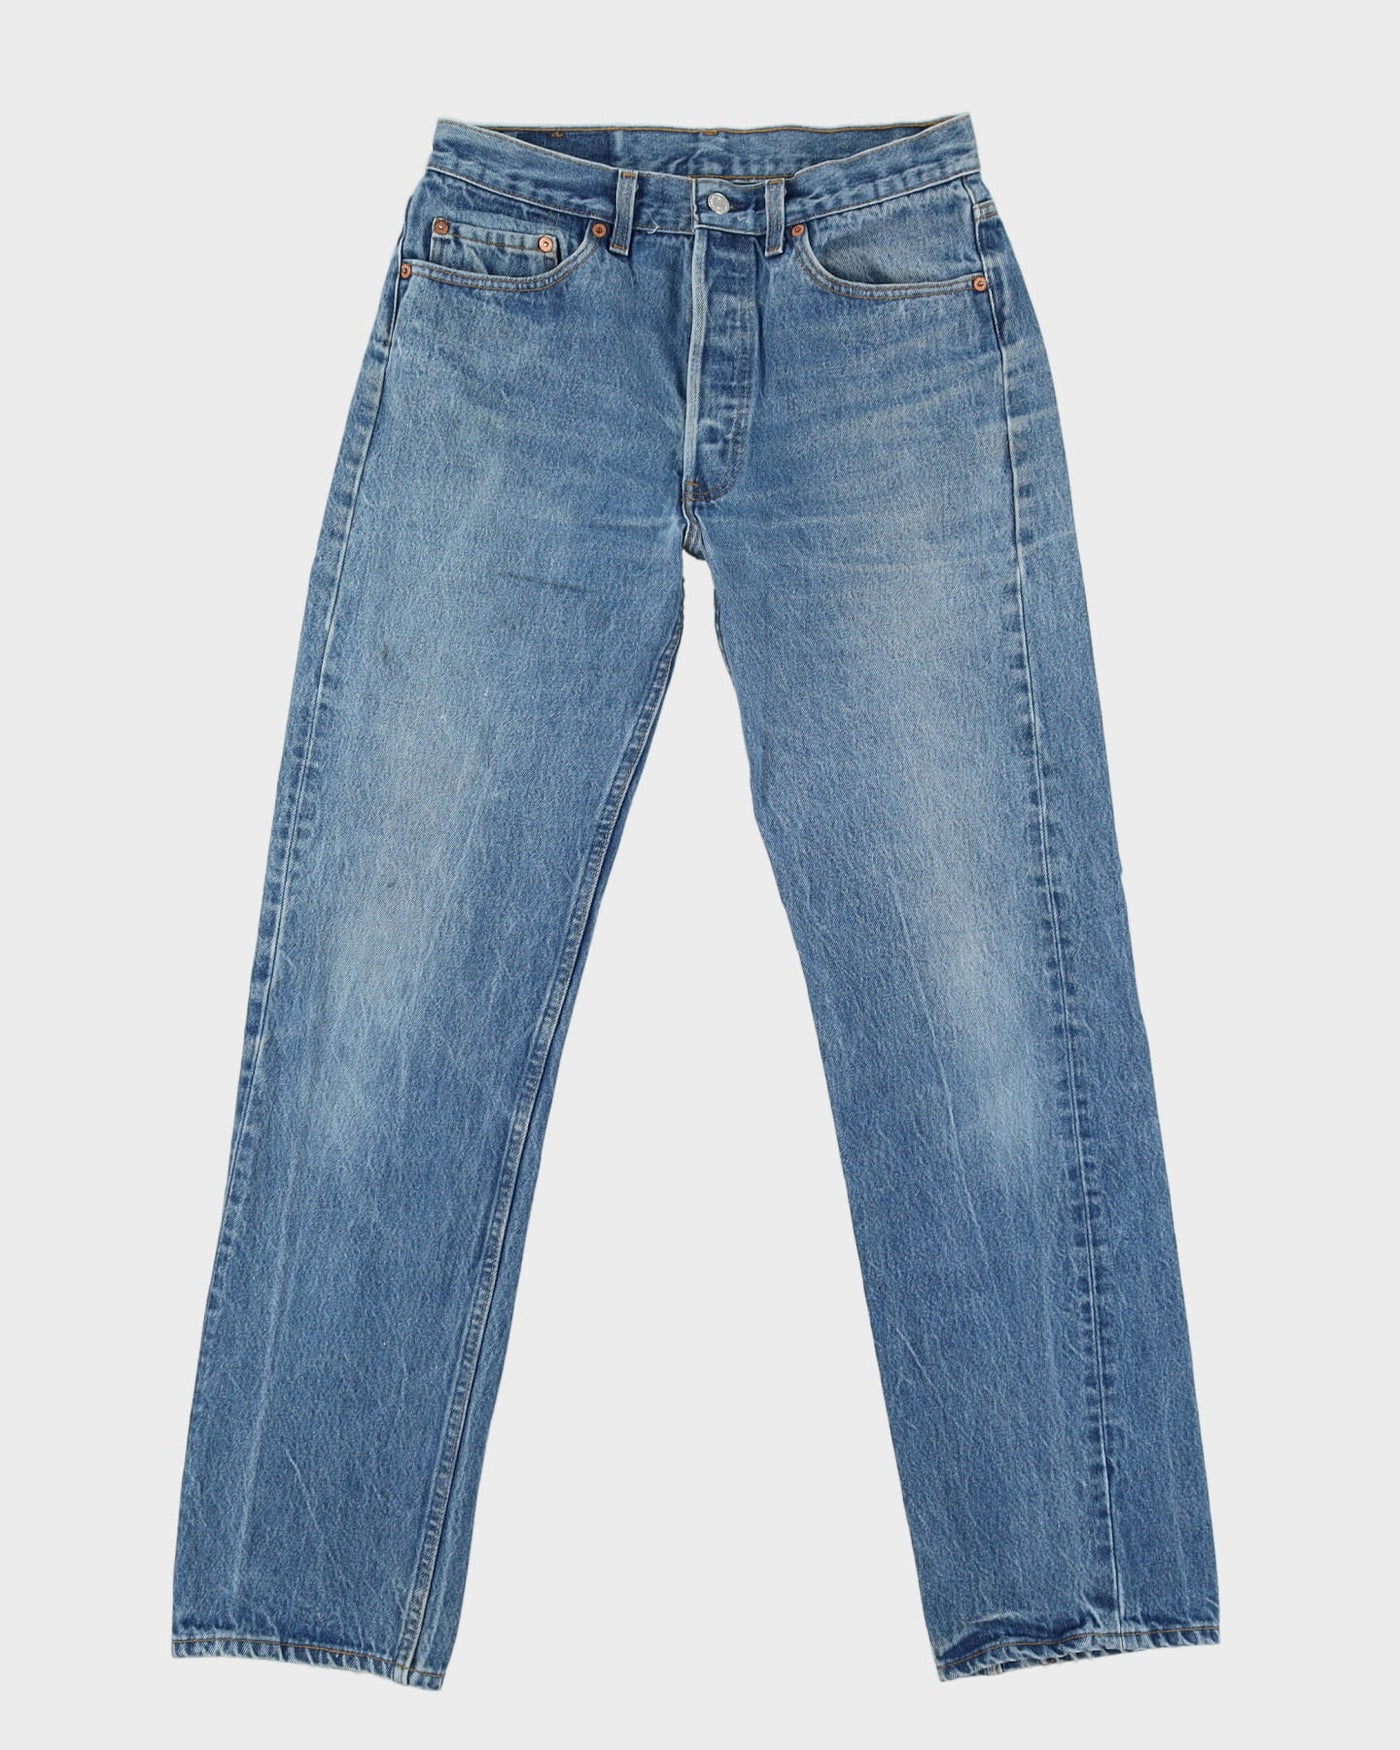 Vintage 90s Levi's 501 Medium Wash Jeans - W30 L32